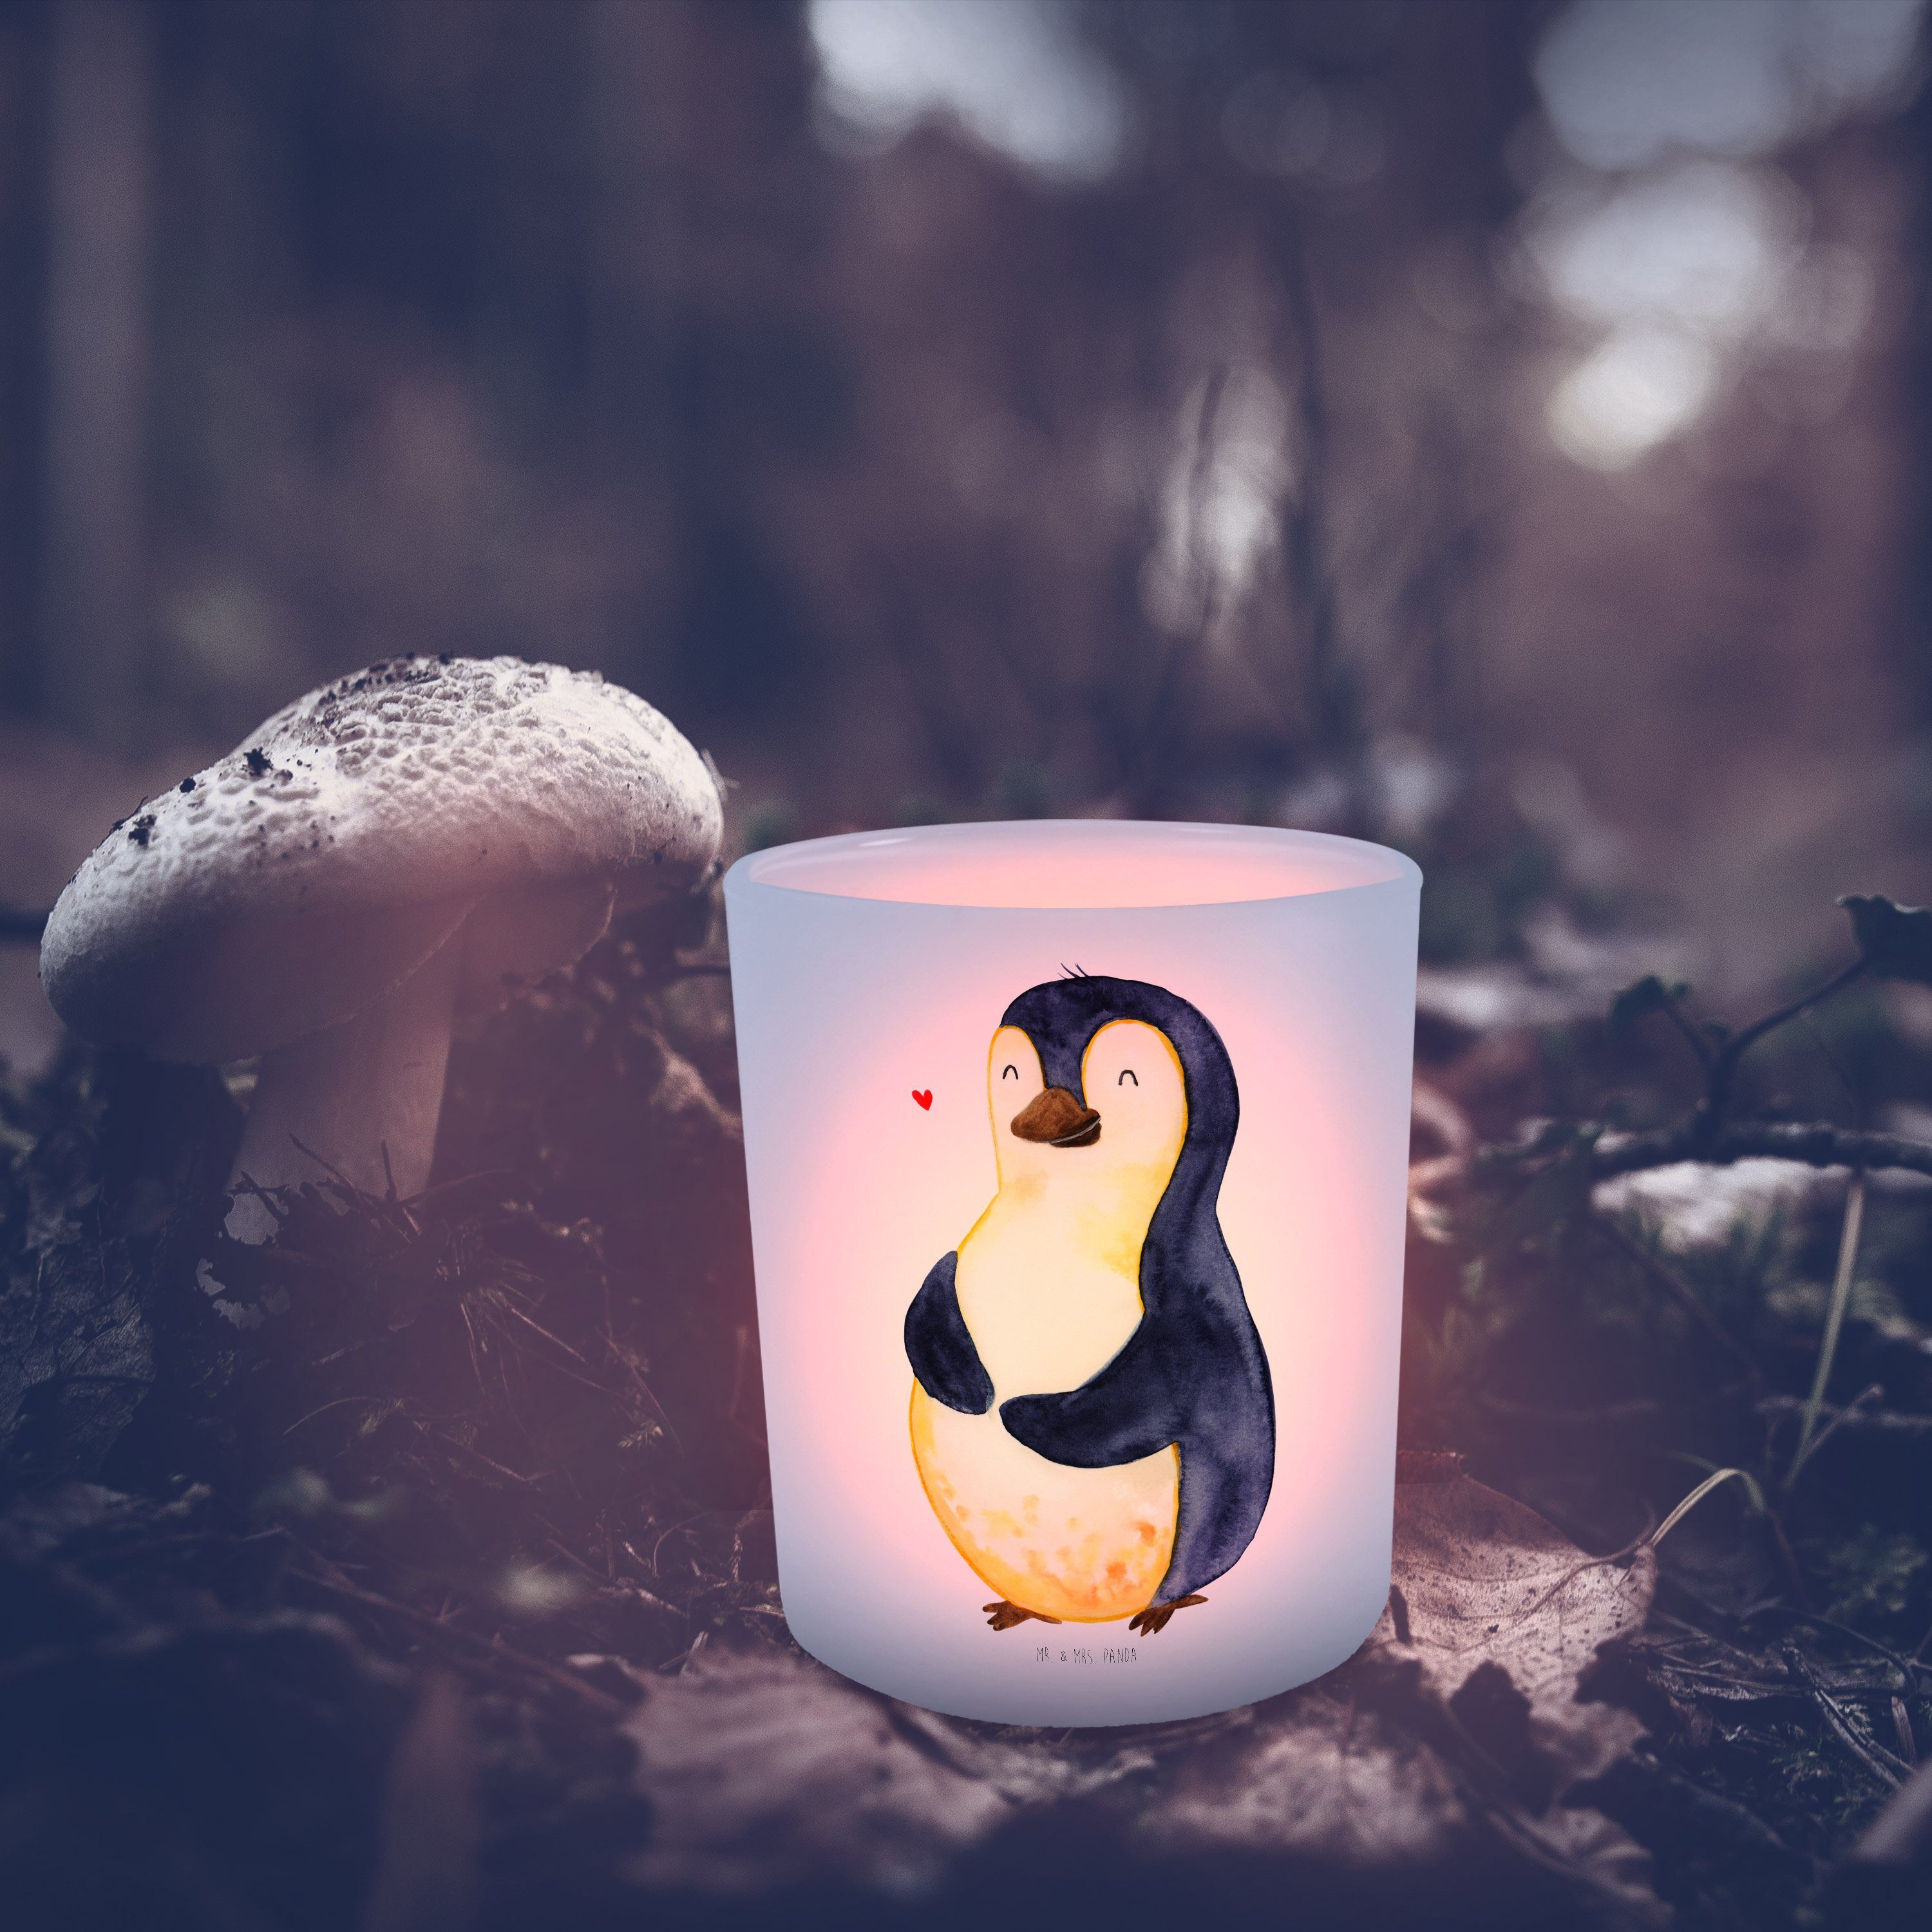 Mr. & Mrs. Panda Geschenk, Abnehmen, Tee Windlicht (1 Diät - - Windlicht Pinguin St) Kerze, Transparent